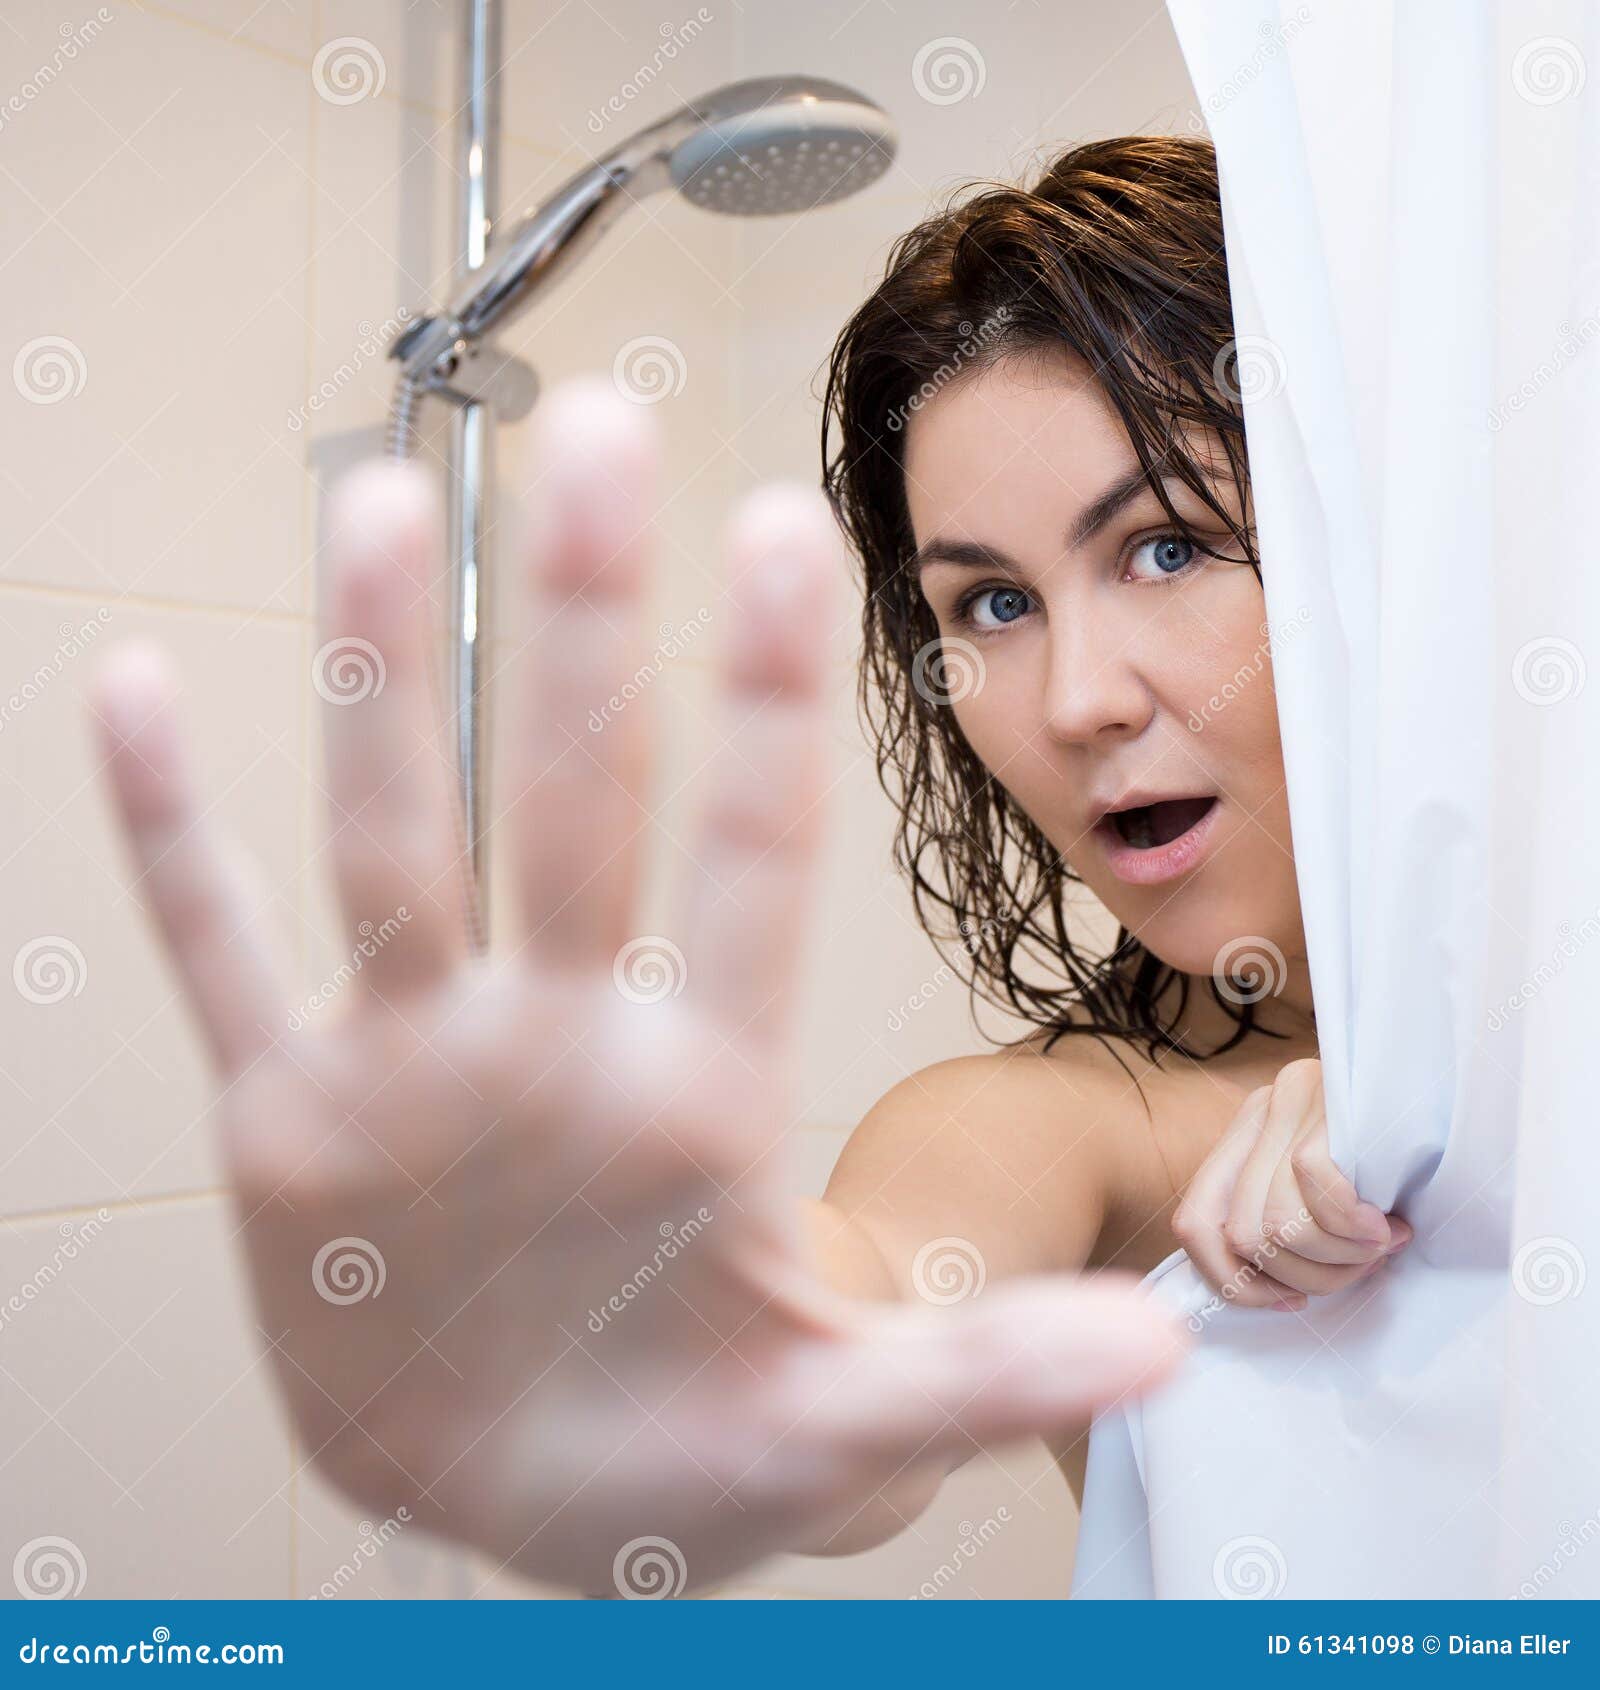 Мама дает в душе. Девушка в ванной за шторкой. Женщина в душе прикрывается. Взрослые женщины в душе. Девушка в душе за шторкой.